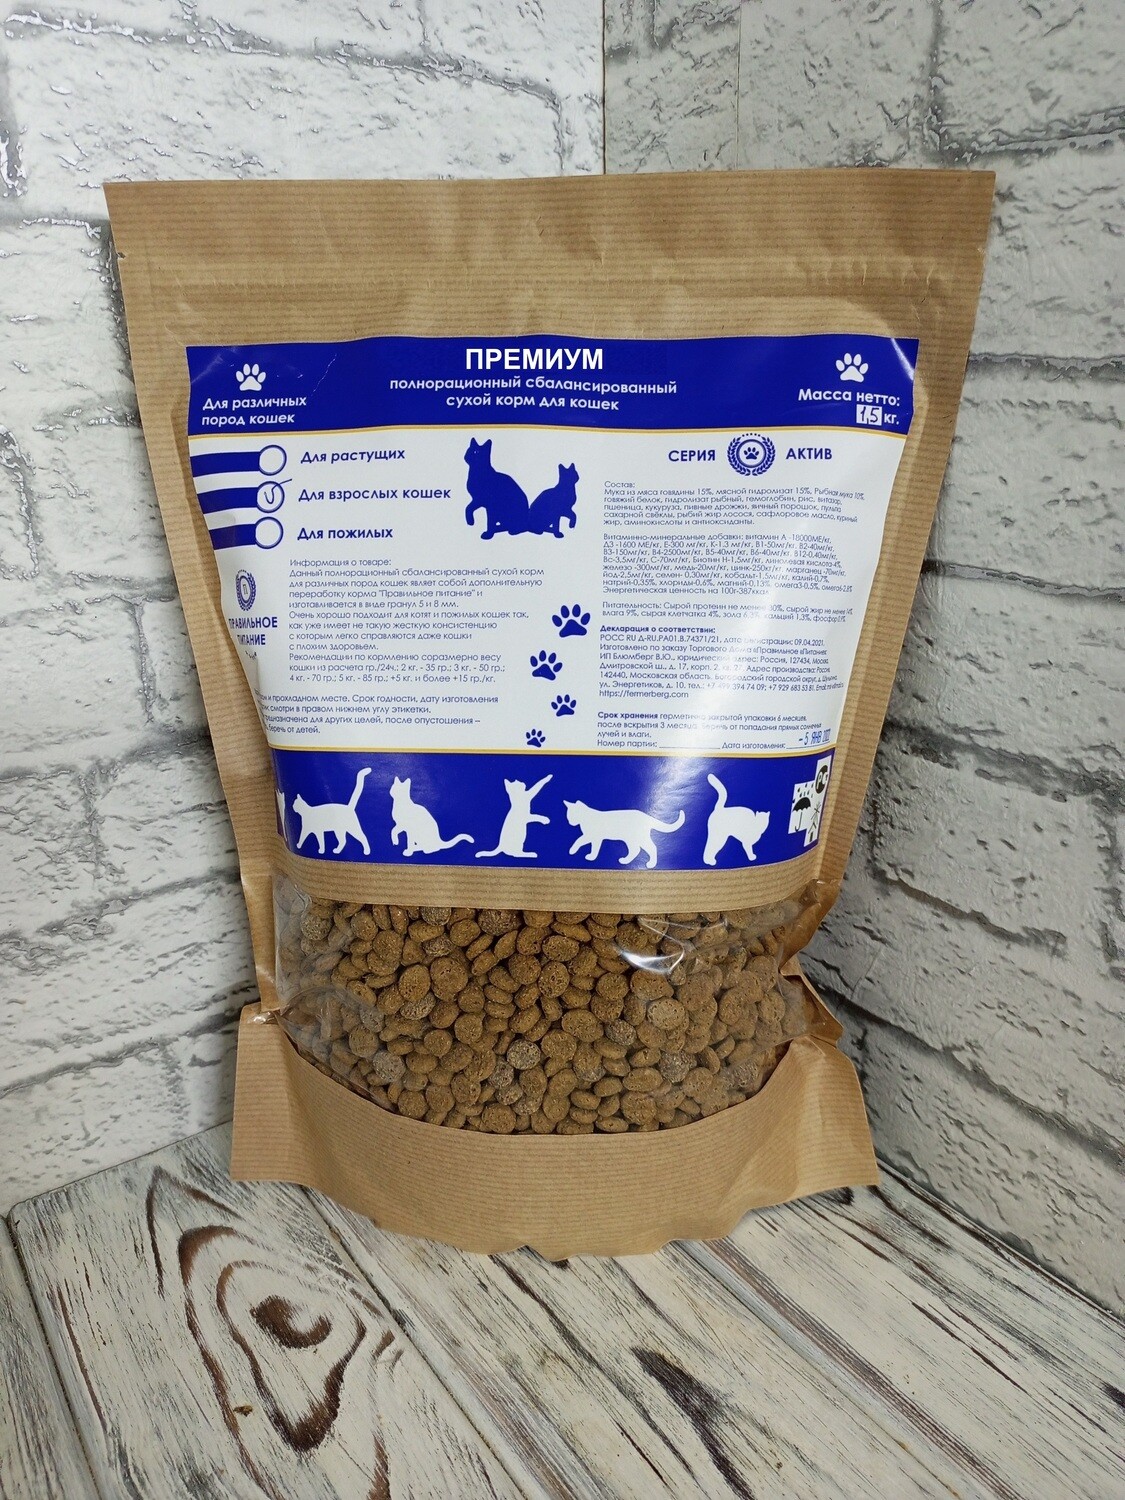 Полнорационный сухой корм для кошек "Премиум", стоимость за 1 кг.